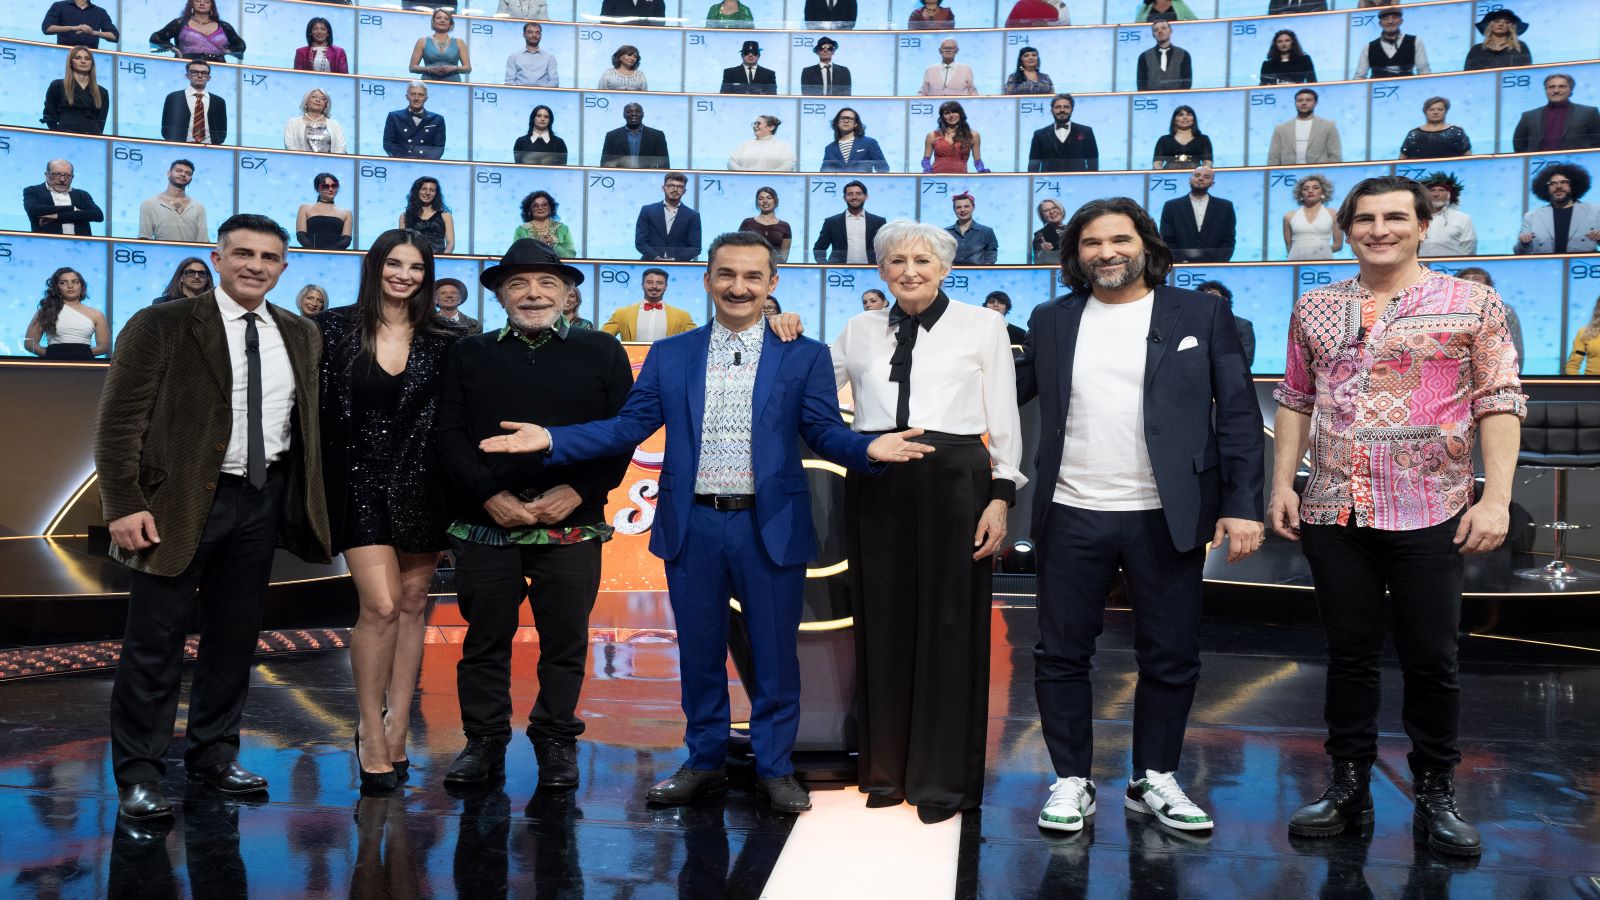 100% Italia Special con Nicola Savino, stasera su Tv8: ospiti e anticipazioni della terza puntata